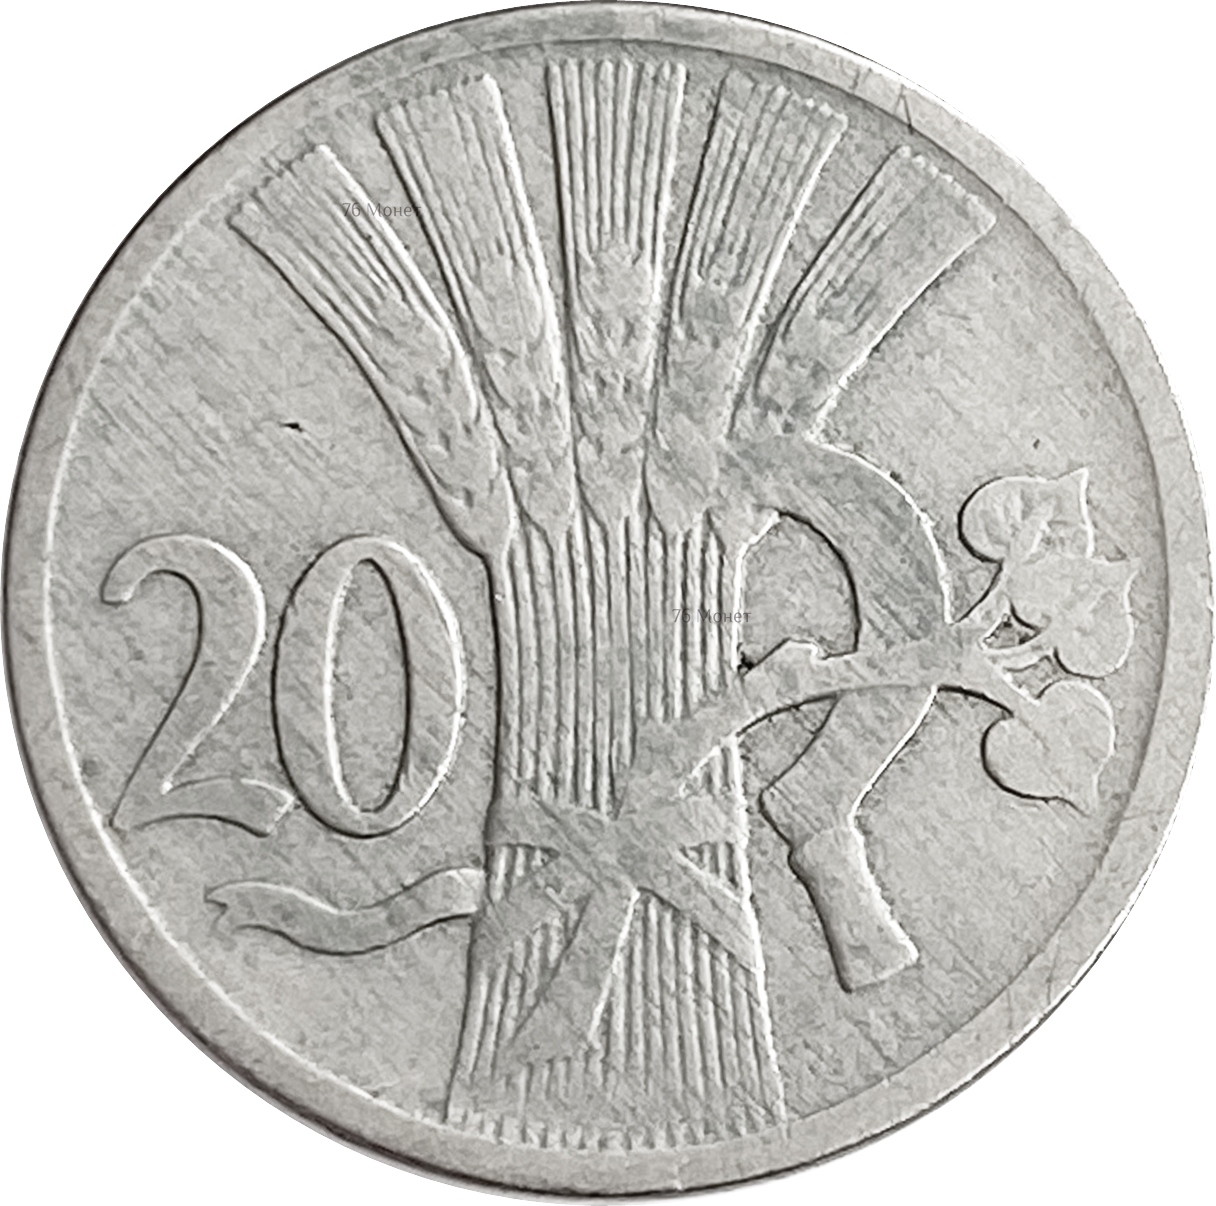 Чехословакия 20. Монеты Чехословакии 20. 20 Геллеров монета. Чехословакия 1921. Чехословакия 10 геллеров 1924.